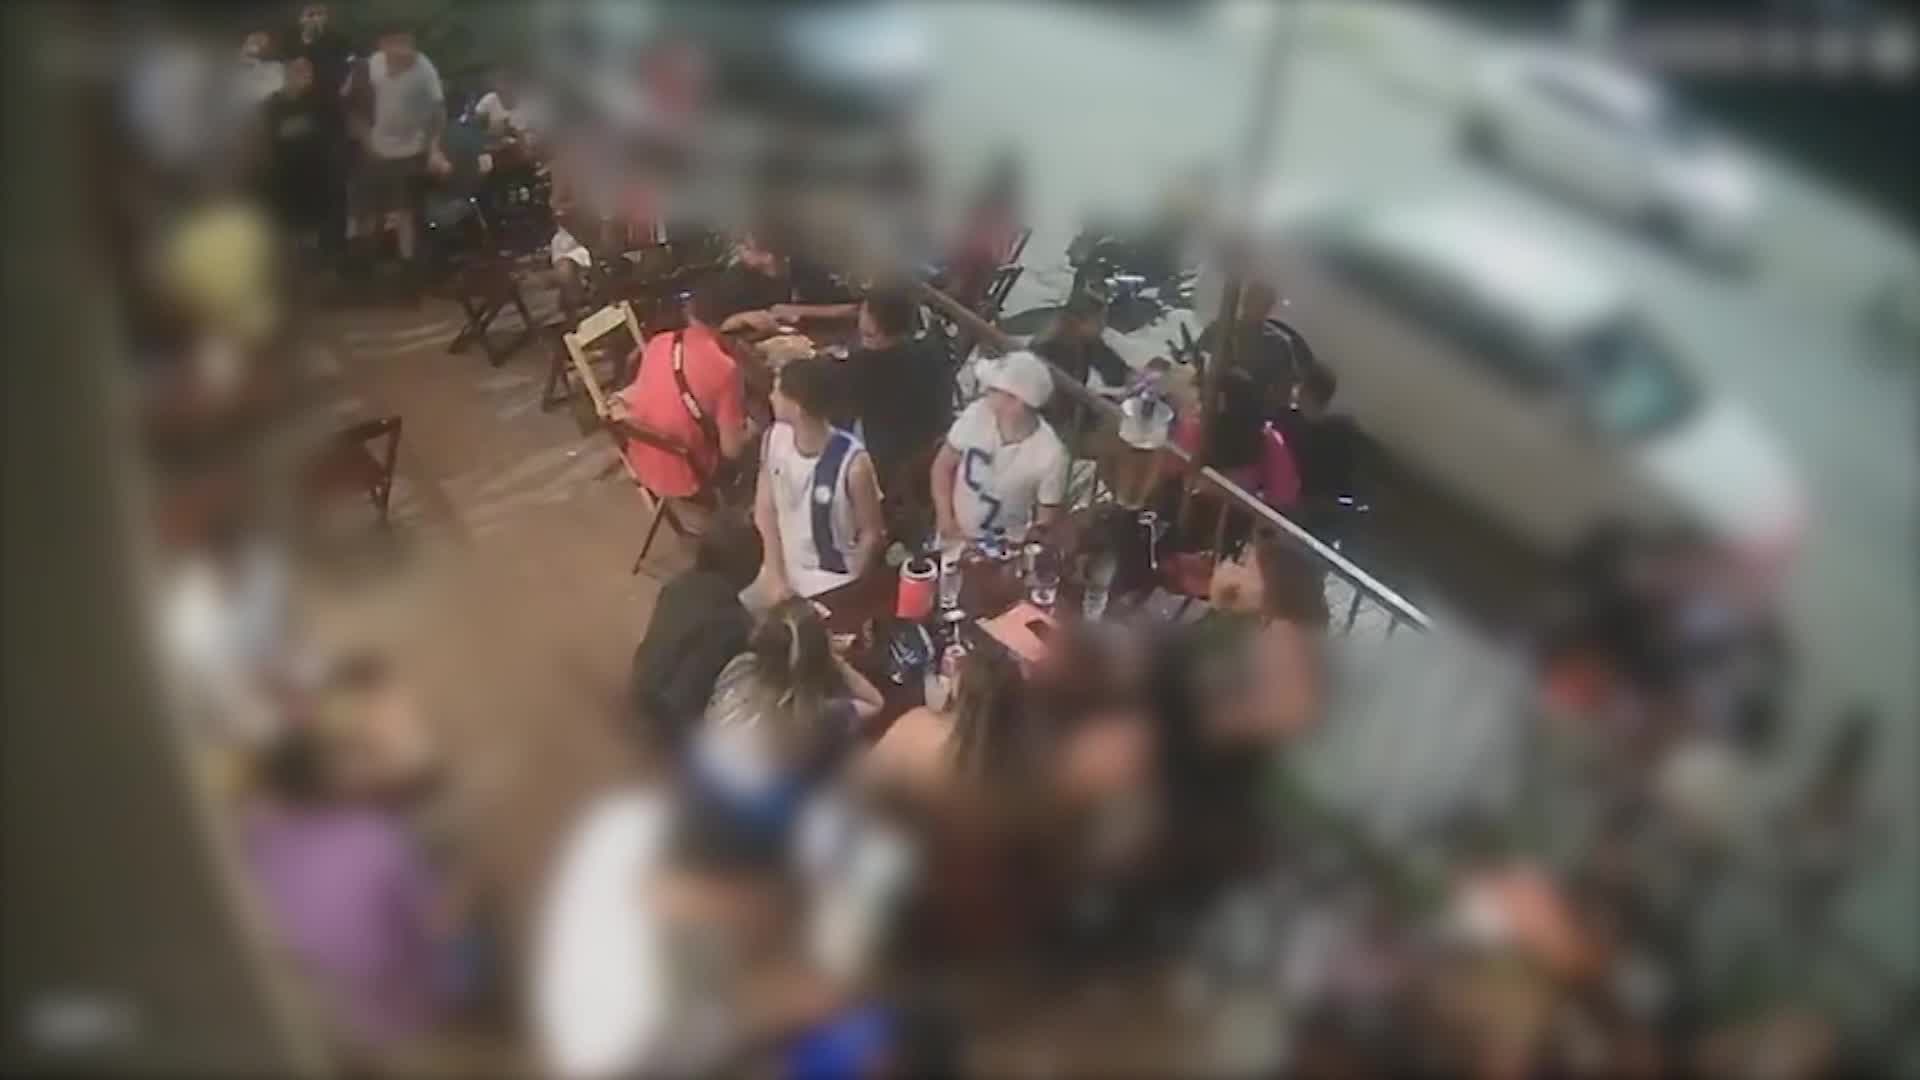 Vídeo: Veja vídeo de briga entre torcidas organizadas em bar de Sete Lagoas (MG)